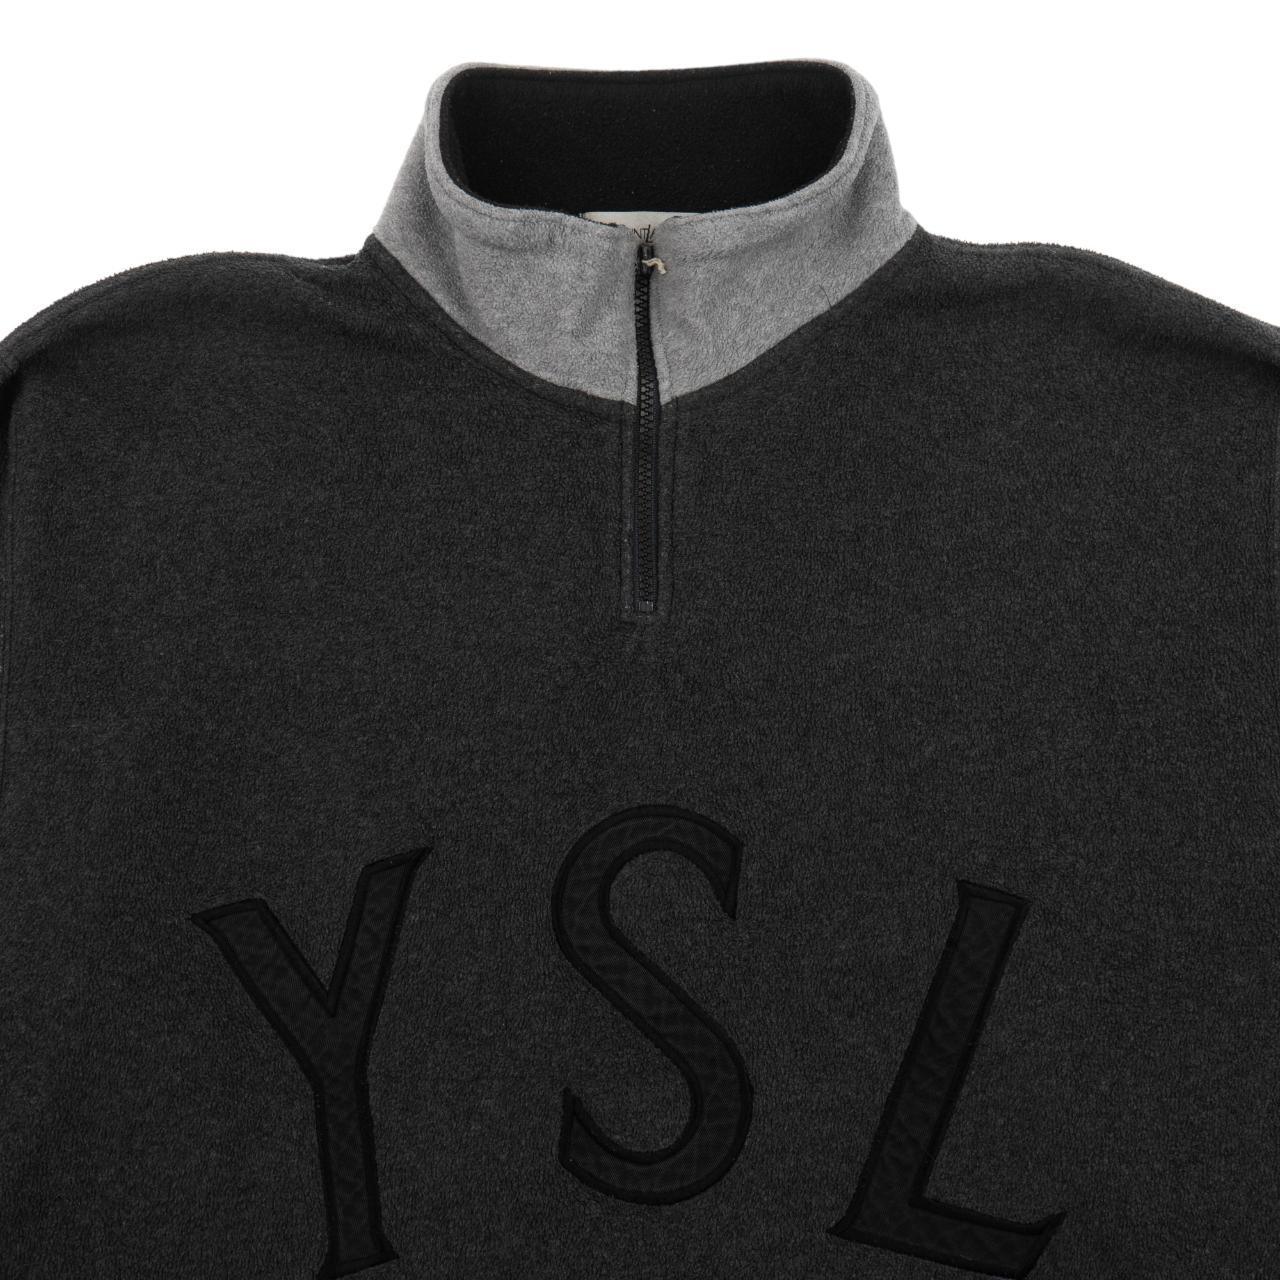 Vintage YSL Yves Saint Laurent Q Zip Fleece Jacket Size M - Known Source